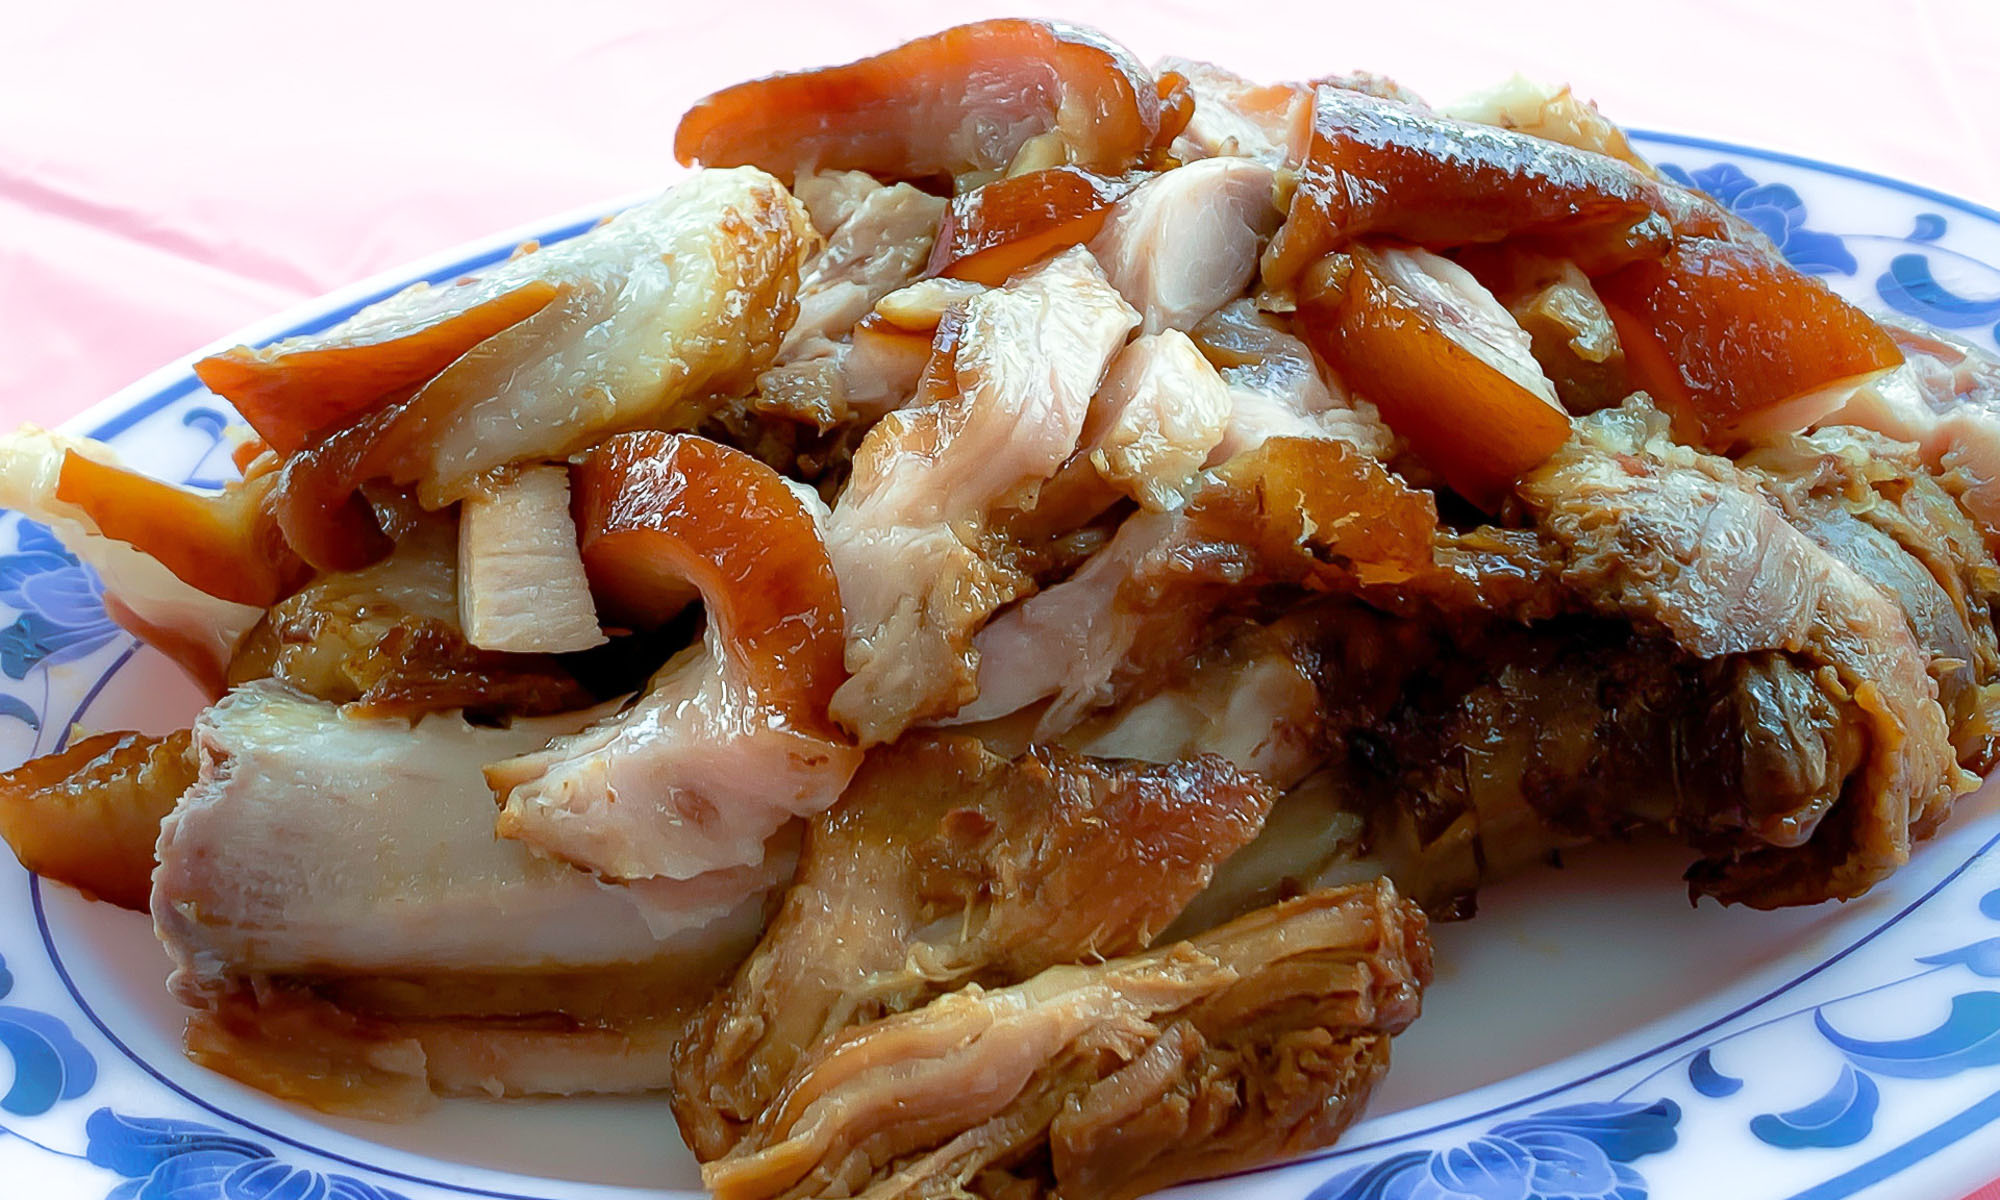 A plate of famous Wanluan Pork Hock.